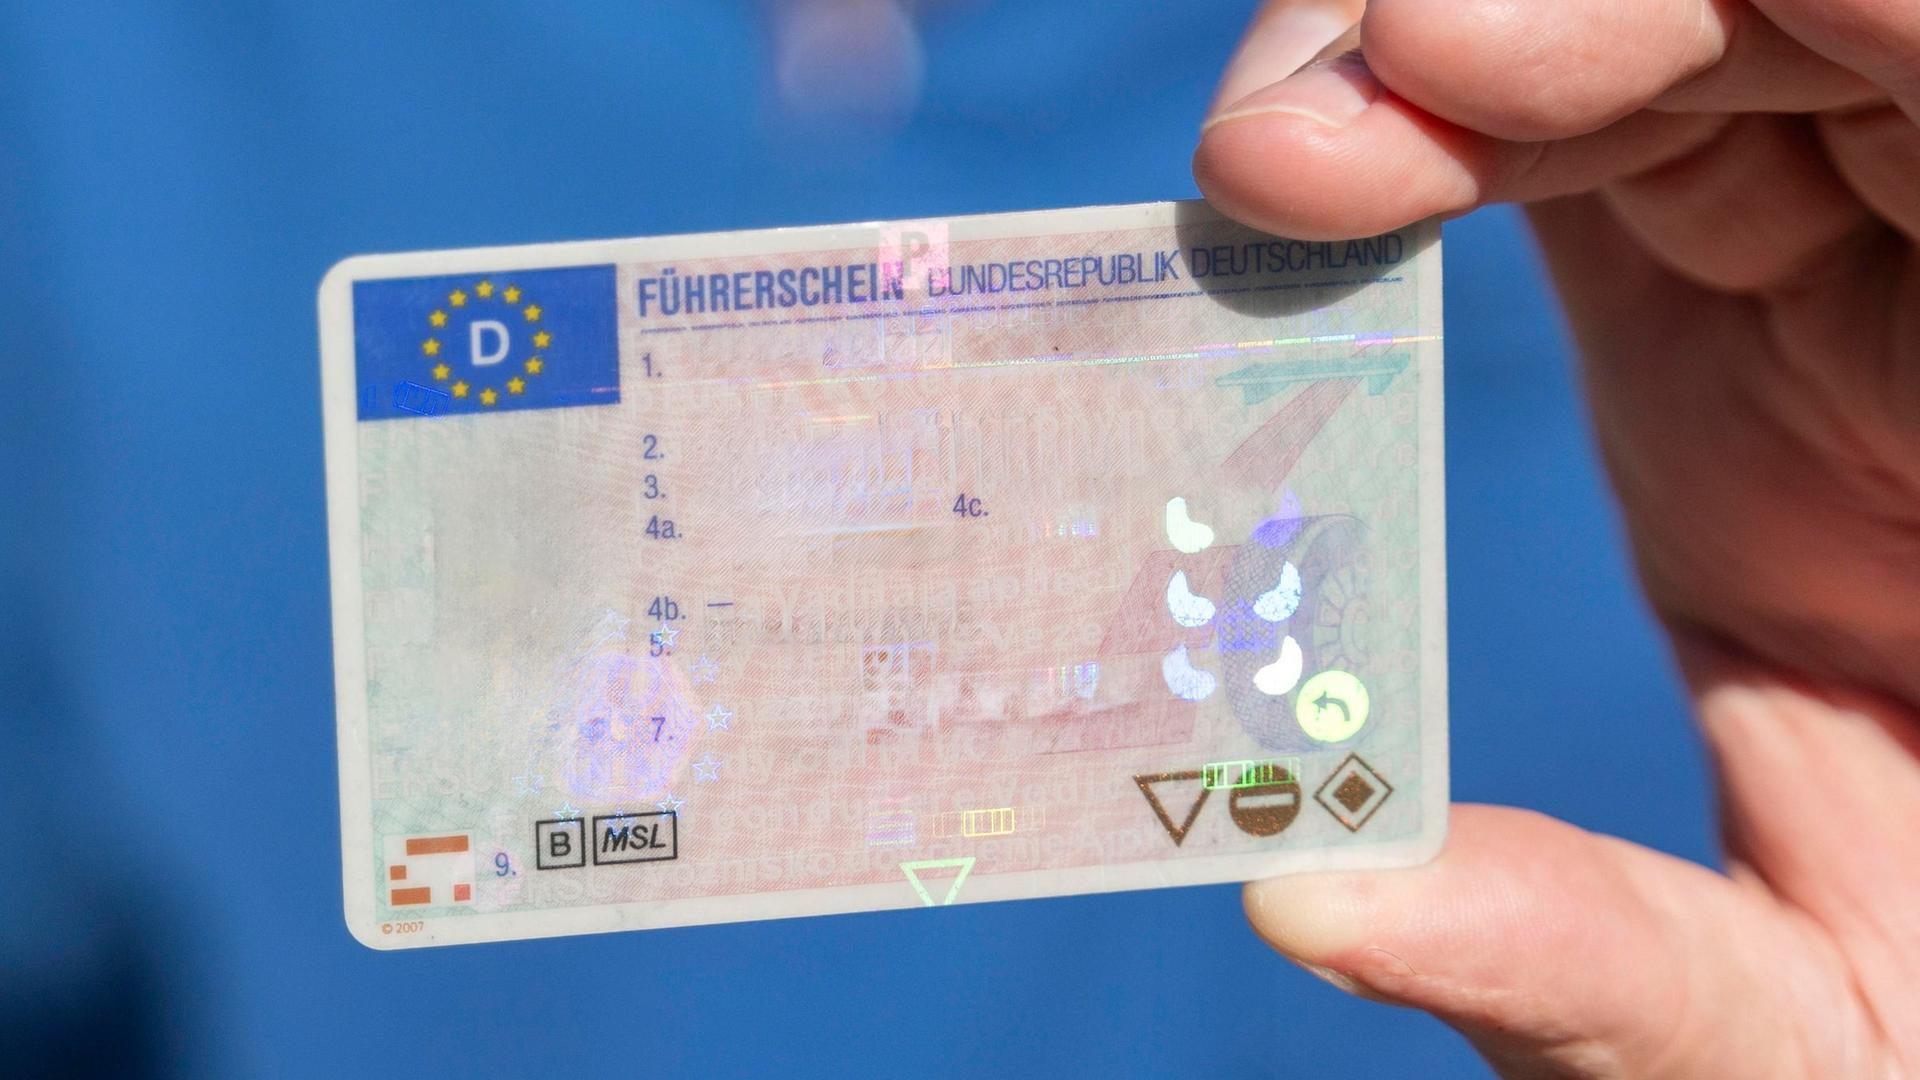 Ein Mann hält einen Führerschein der Bundesrepublik Deutschland in der Hand.